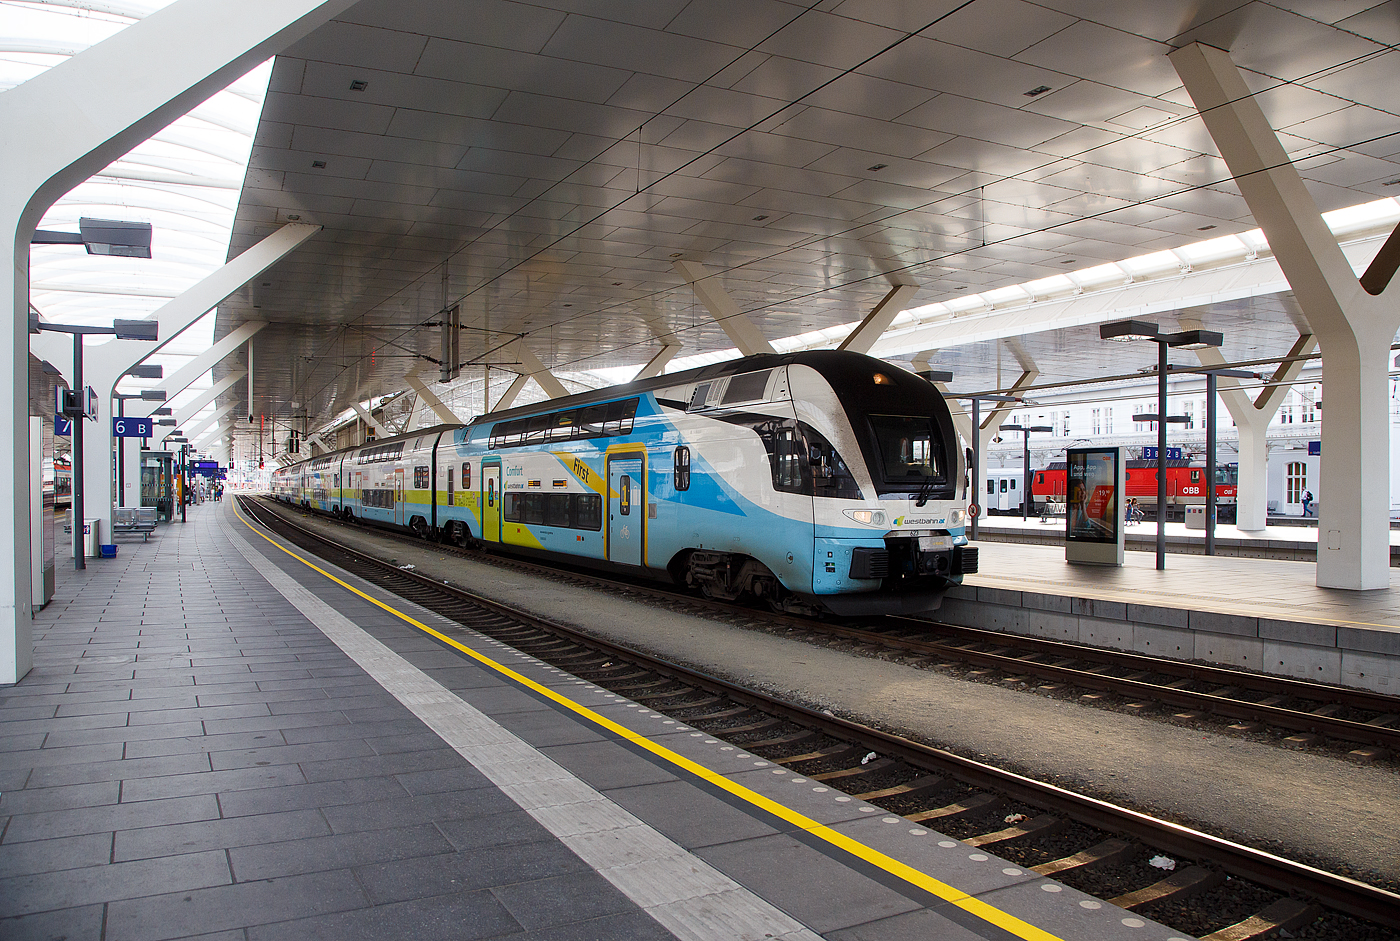 Der sechsteilige elektrische Doppelstocktriebzug Stadler Kiss  4010 623 / 4010 123 der WESTbahn am 12.09.2022 im Hbf Salzburg.

Die sterreichische Westbahn nahm am 11. Dezember 2011 sieben sechsteilige Einheiten einer Fernverkehrsvariante (adaptiert fr 200 km/h, grerer Sitzabstand) von Stadler KISS in Betrieb. Dann folgten 2017 noch ein weiterer sechsteiliger (4010 008) und vierteilige (4110 009 – 017) Triebzge. Alle diese 17 KISS 1 und 2 Garnituren wurden 2021 an die Deutsche Bahn verkauft, die sie nun als IC 2 einsetzt.

Als Ersatz fr die 17 Kiss 1 und 2 wurden 15 neue sechsteilige Zge (4010 018-032) wiederum bei Stadler Rail bestellt, welche baugleich mit der 2017 gelieferten Garnitur (4010 008) ausgefhrt wurden und jeweils ber 526 Sitzpltze verfgen. Alle Radstze der Endwagen sind angetrieben, die Mittelwagen sind antriebslos. Alle KISS der WESTbahn sind in der Schweiz eingestellt hier z.B. als 93 85 4010 129-3 CH-WSTBA.

Mit dem Stadler KISS wurde ein neues Klassensystem bei der WESTbahn eingefhrt: First - 1. Klasse (Leitfarbe gelb), Comfort - 2+Klasse (Leitfarbe petrol) und Standard - 2. Klasse (Leitfarbe orange) angeboten. In der Comfort-Klasse und in der First ist ein Upgrade zu zahlen, das eine Reservierung beinhaltet. Die Comfort-Klasse steht Inhaberinnen und Inhabern eines Klimatickets ohne Aufpreis zur Verfgung.

TECHNISCHE DATEN der KISS:
Anzahl: 15 sechsteilige Triebzge
Spurweite: 1.435 mm (Normalspur)
Achsformel: Bo’Bo’+2’2’+2’2’+2’2’+2’2’+Bo’Bo’
Lnge ber Kupplung: 150.000 mm
Fahrzeugbreite: 2.800 mm
Fahrzeughhe: 4.595 mm
Achsstand im Drehgestell: 2.500 mm (Trieb- und Laufdrehgestell)
Trieb- und Laufraddurchmesser: 920 mm (neu)
Dauerleistung am Rad: 4.000 kW
Max. Leistung am Rad: 6.000 kW
Anfahrzugskraft (bis 68 km/h): 320 kN
Anfahrbeschleunigung: 0.85 m/s
Hchstgeschwindigkeit 200 km/h
Sitzpltze: 526
Stromsystem: 15 kV AC, 16.7 Hz
Fubodenhhe: Niederflur am Einstieg 570 mm, Unterdeck 440 mm, Oberdeck 2.515 mm
Einstiegsbreite: 1.400 mm